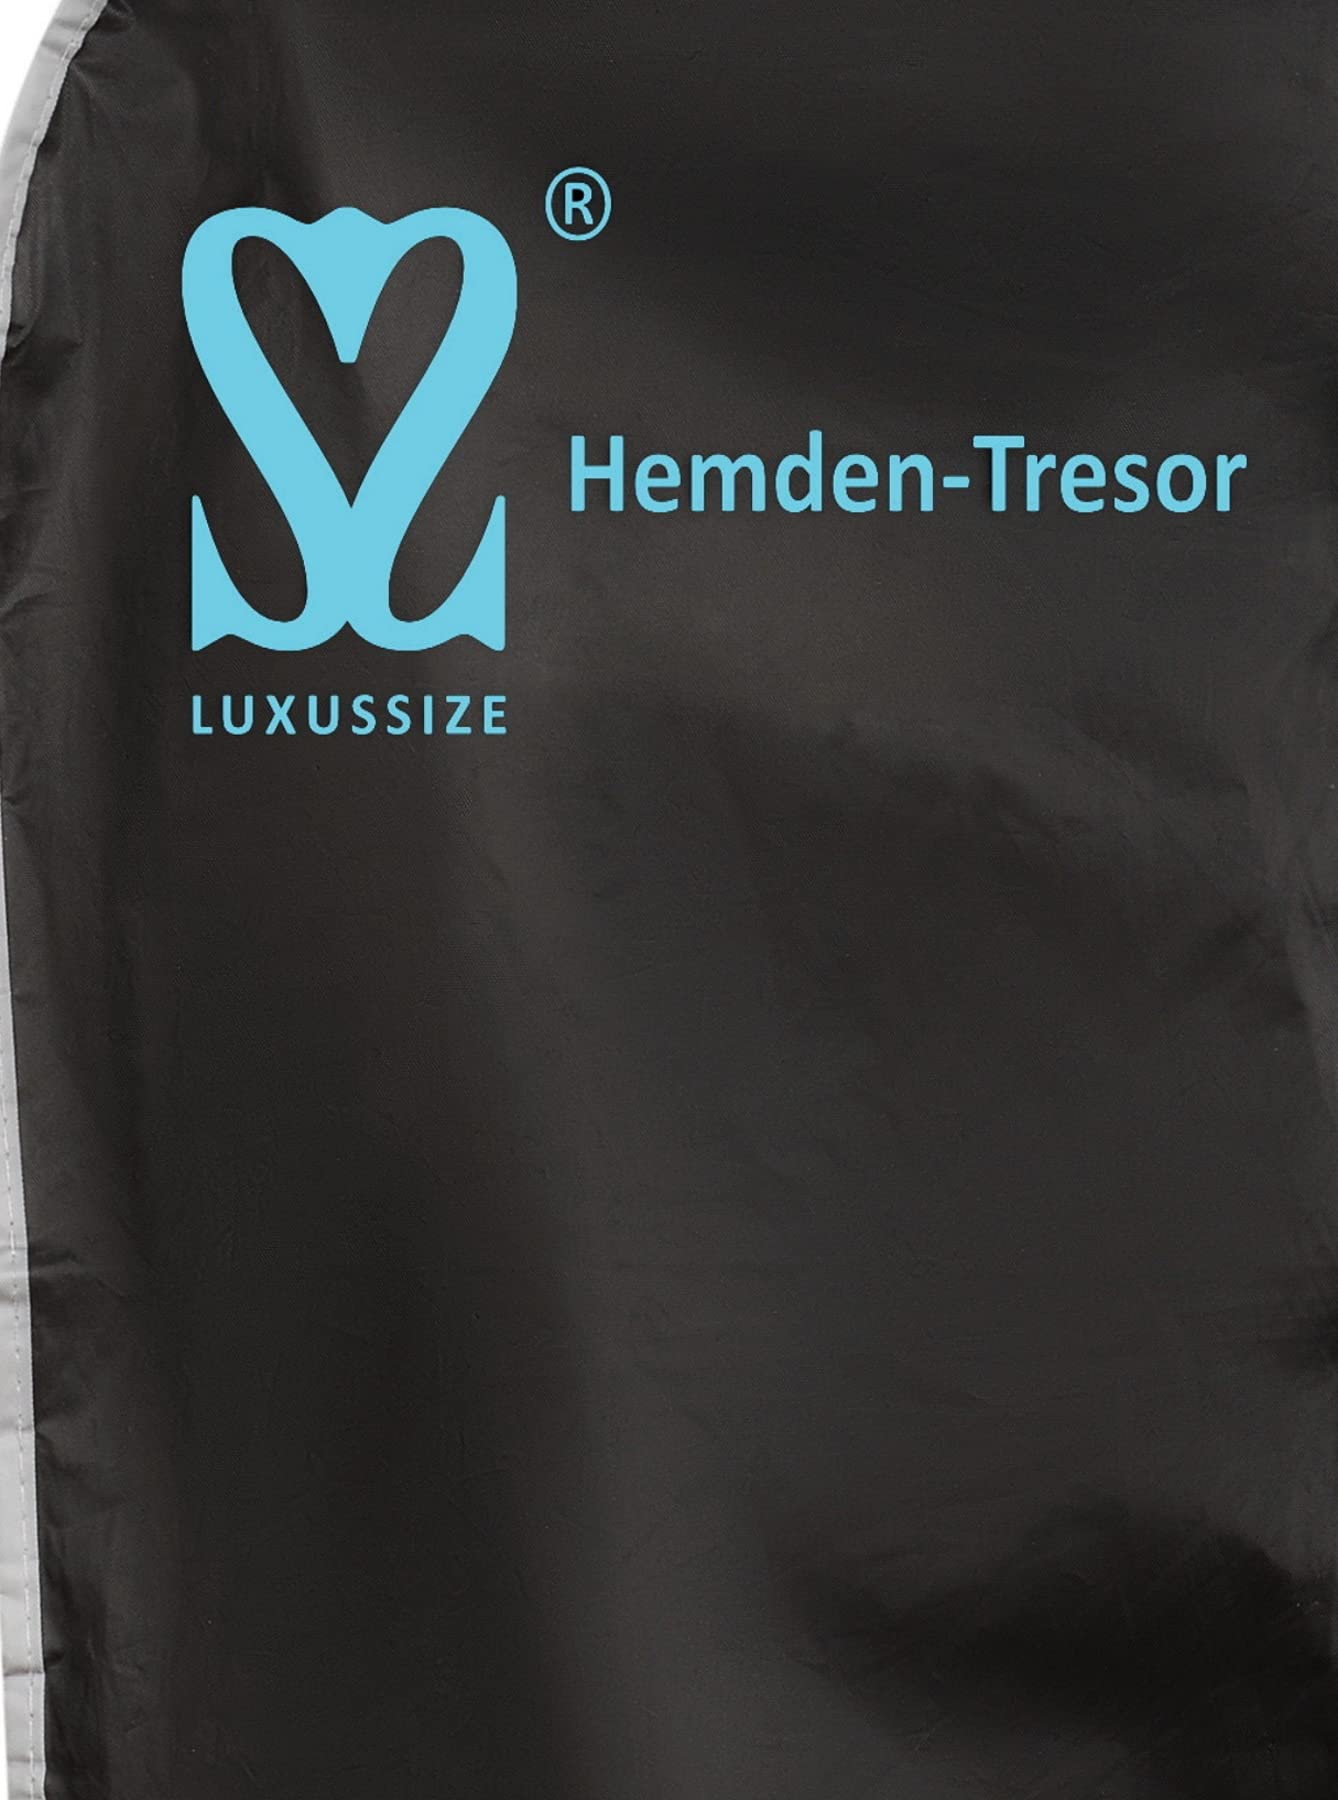 Luxussize - Kleidersack Kleiderhülle, HEMDEN-TRESOR, - 100cm x 58 cm